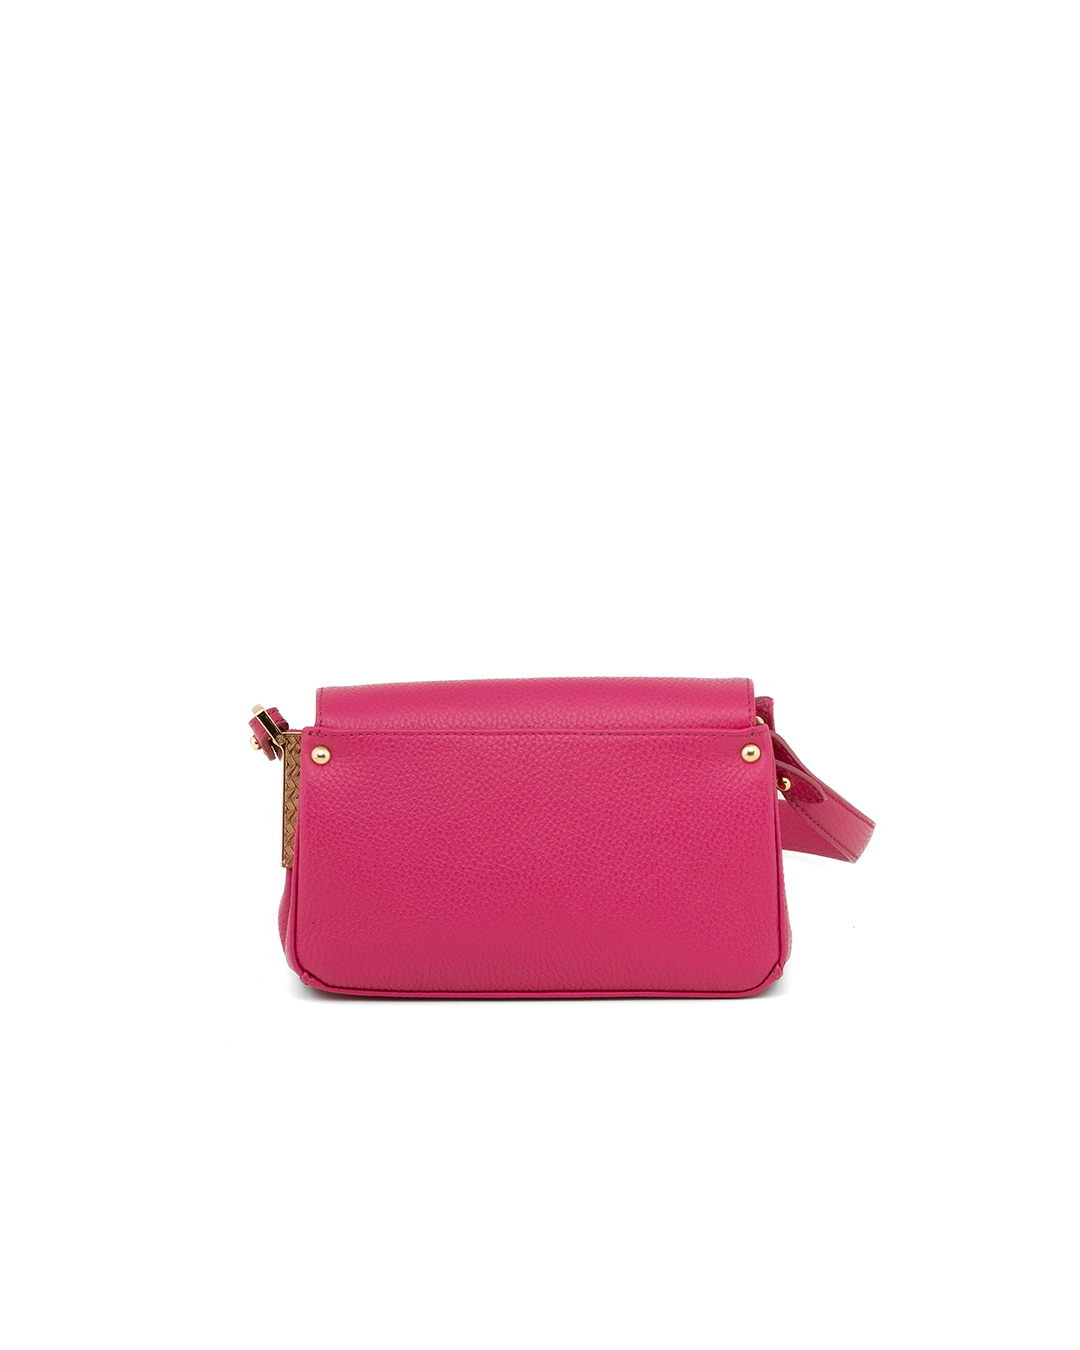 Gilda Tonelli - Baguette handbag